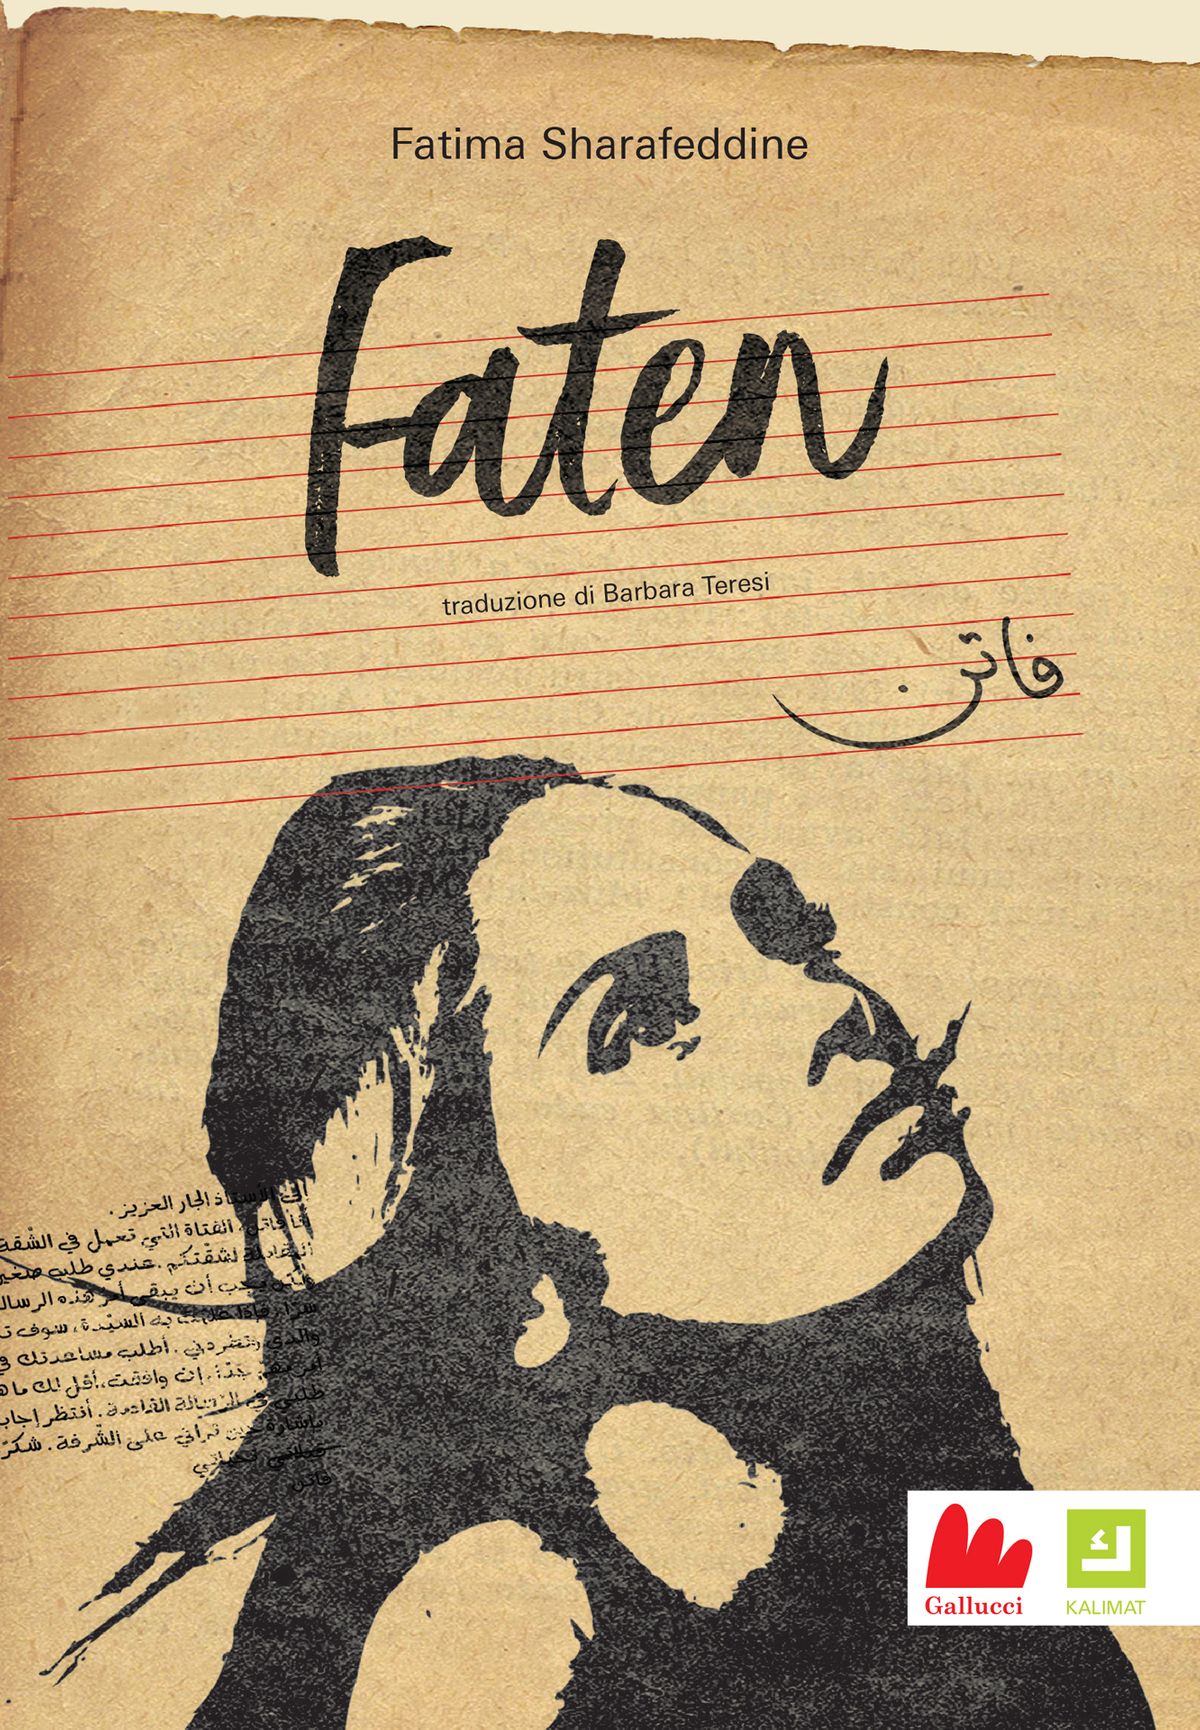 Faten